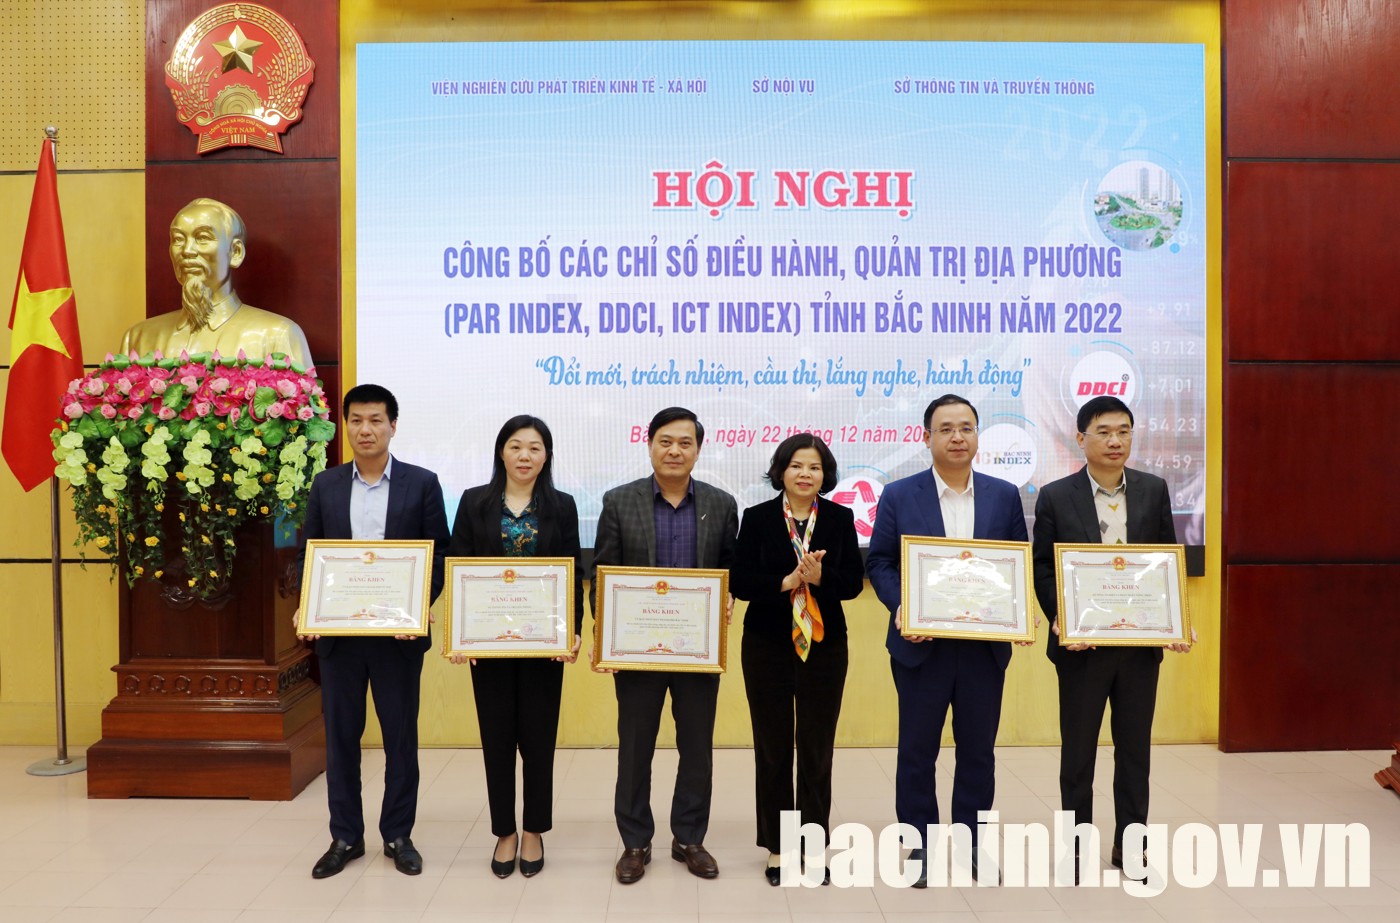 Hội nghị công bố các Chỉ số điều hành, quản trị địa phương tỉnh Bắc Ninh năm 2022